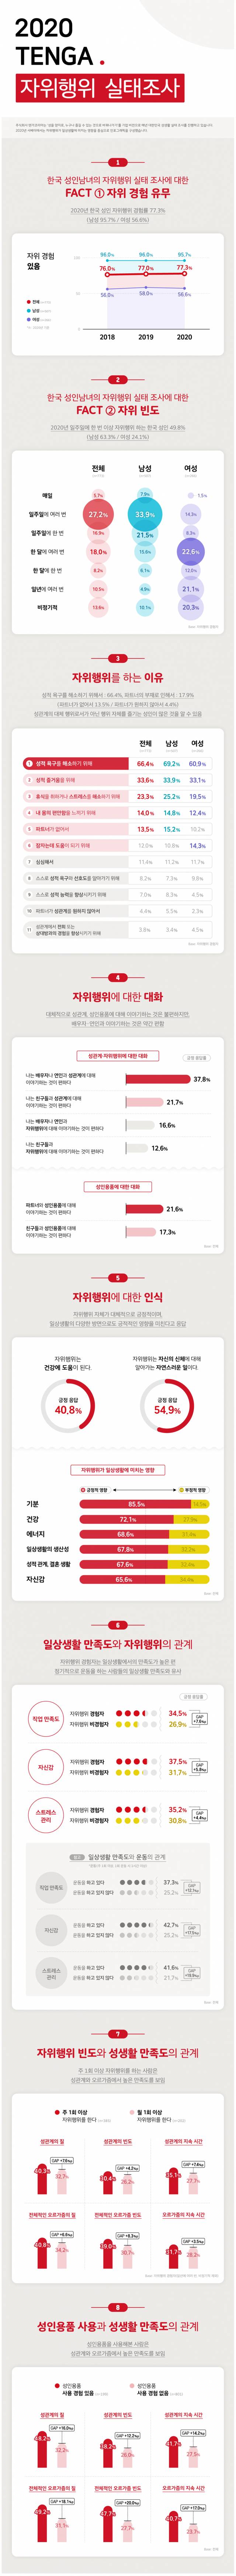 잠자기전에 보는 2020 한국인의 자기위로행위 실태조사.txt | 인스티즈